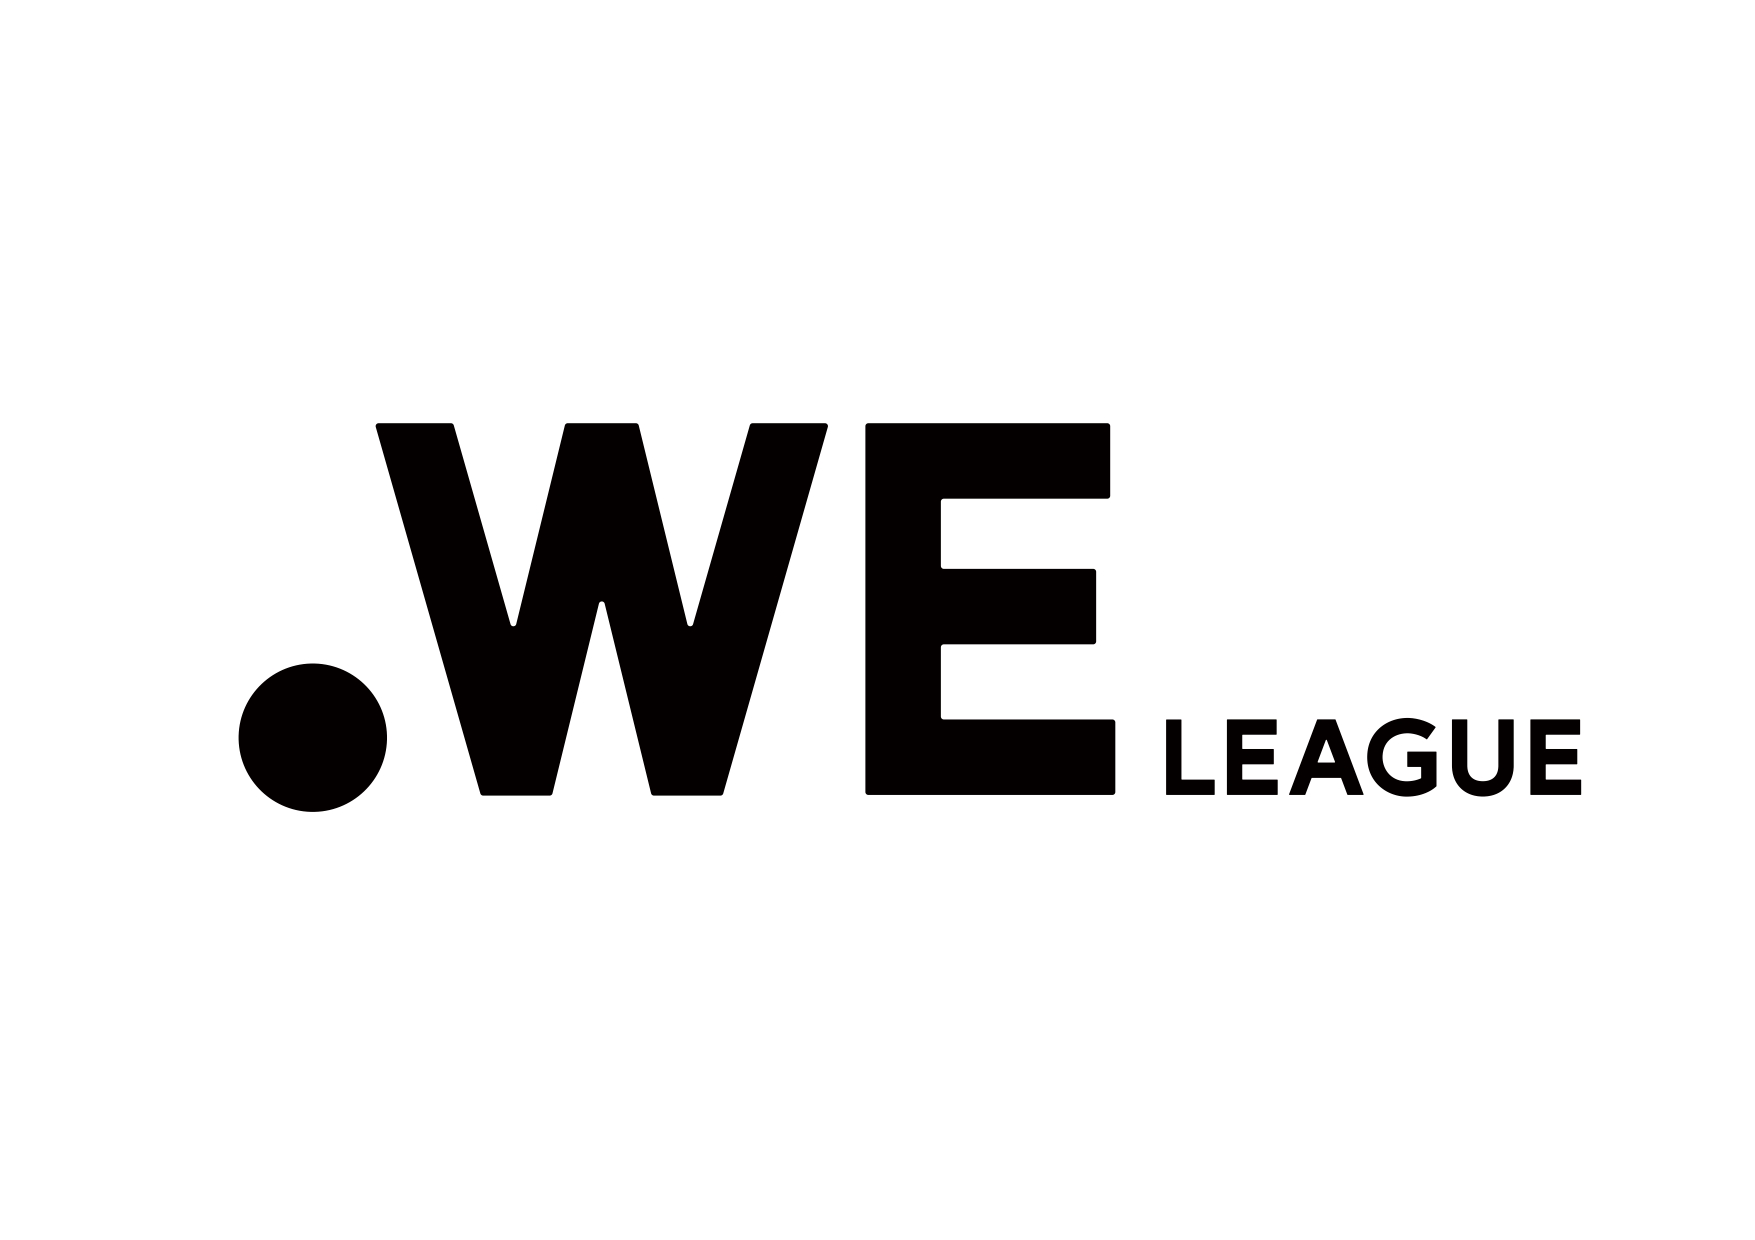 来年秋に開幕する日本初の女子プロサッカーリーグ 名称は Weリーグ に決定 Dime アットダイム